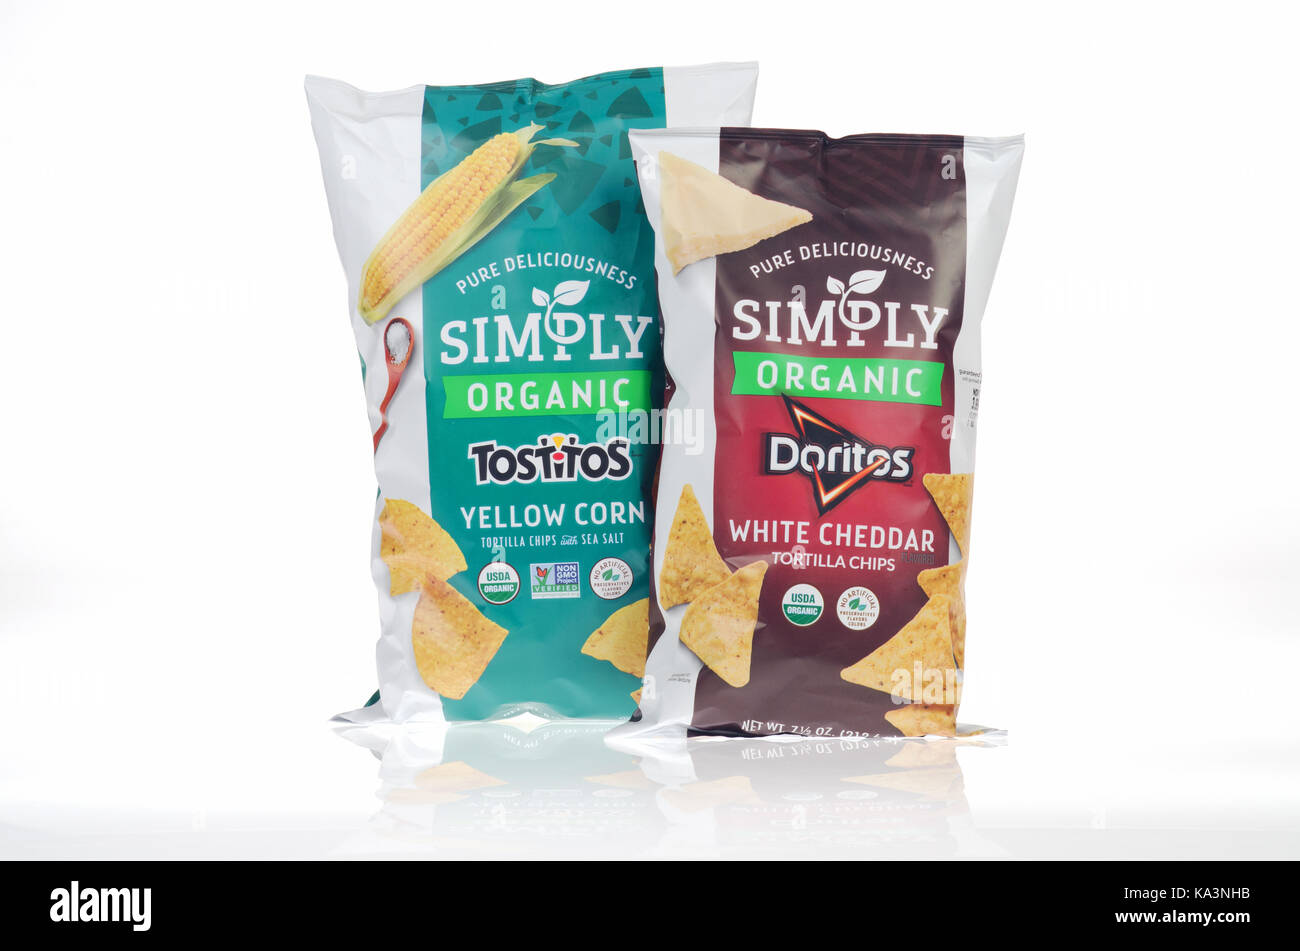 Tout simplement des sacs de cheddar blanc biologique Doritos et maïs jaune par Tostitos Frito-lay sur fond blanc. USA Banque D'Images